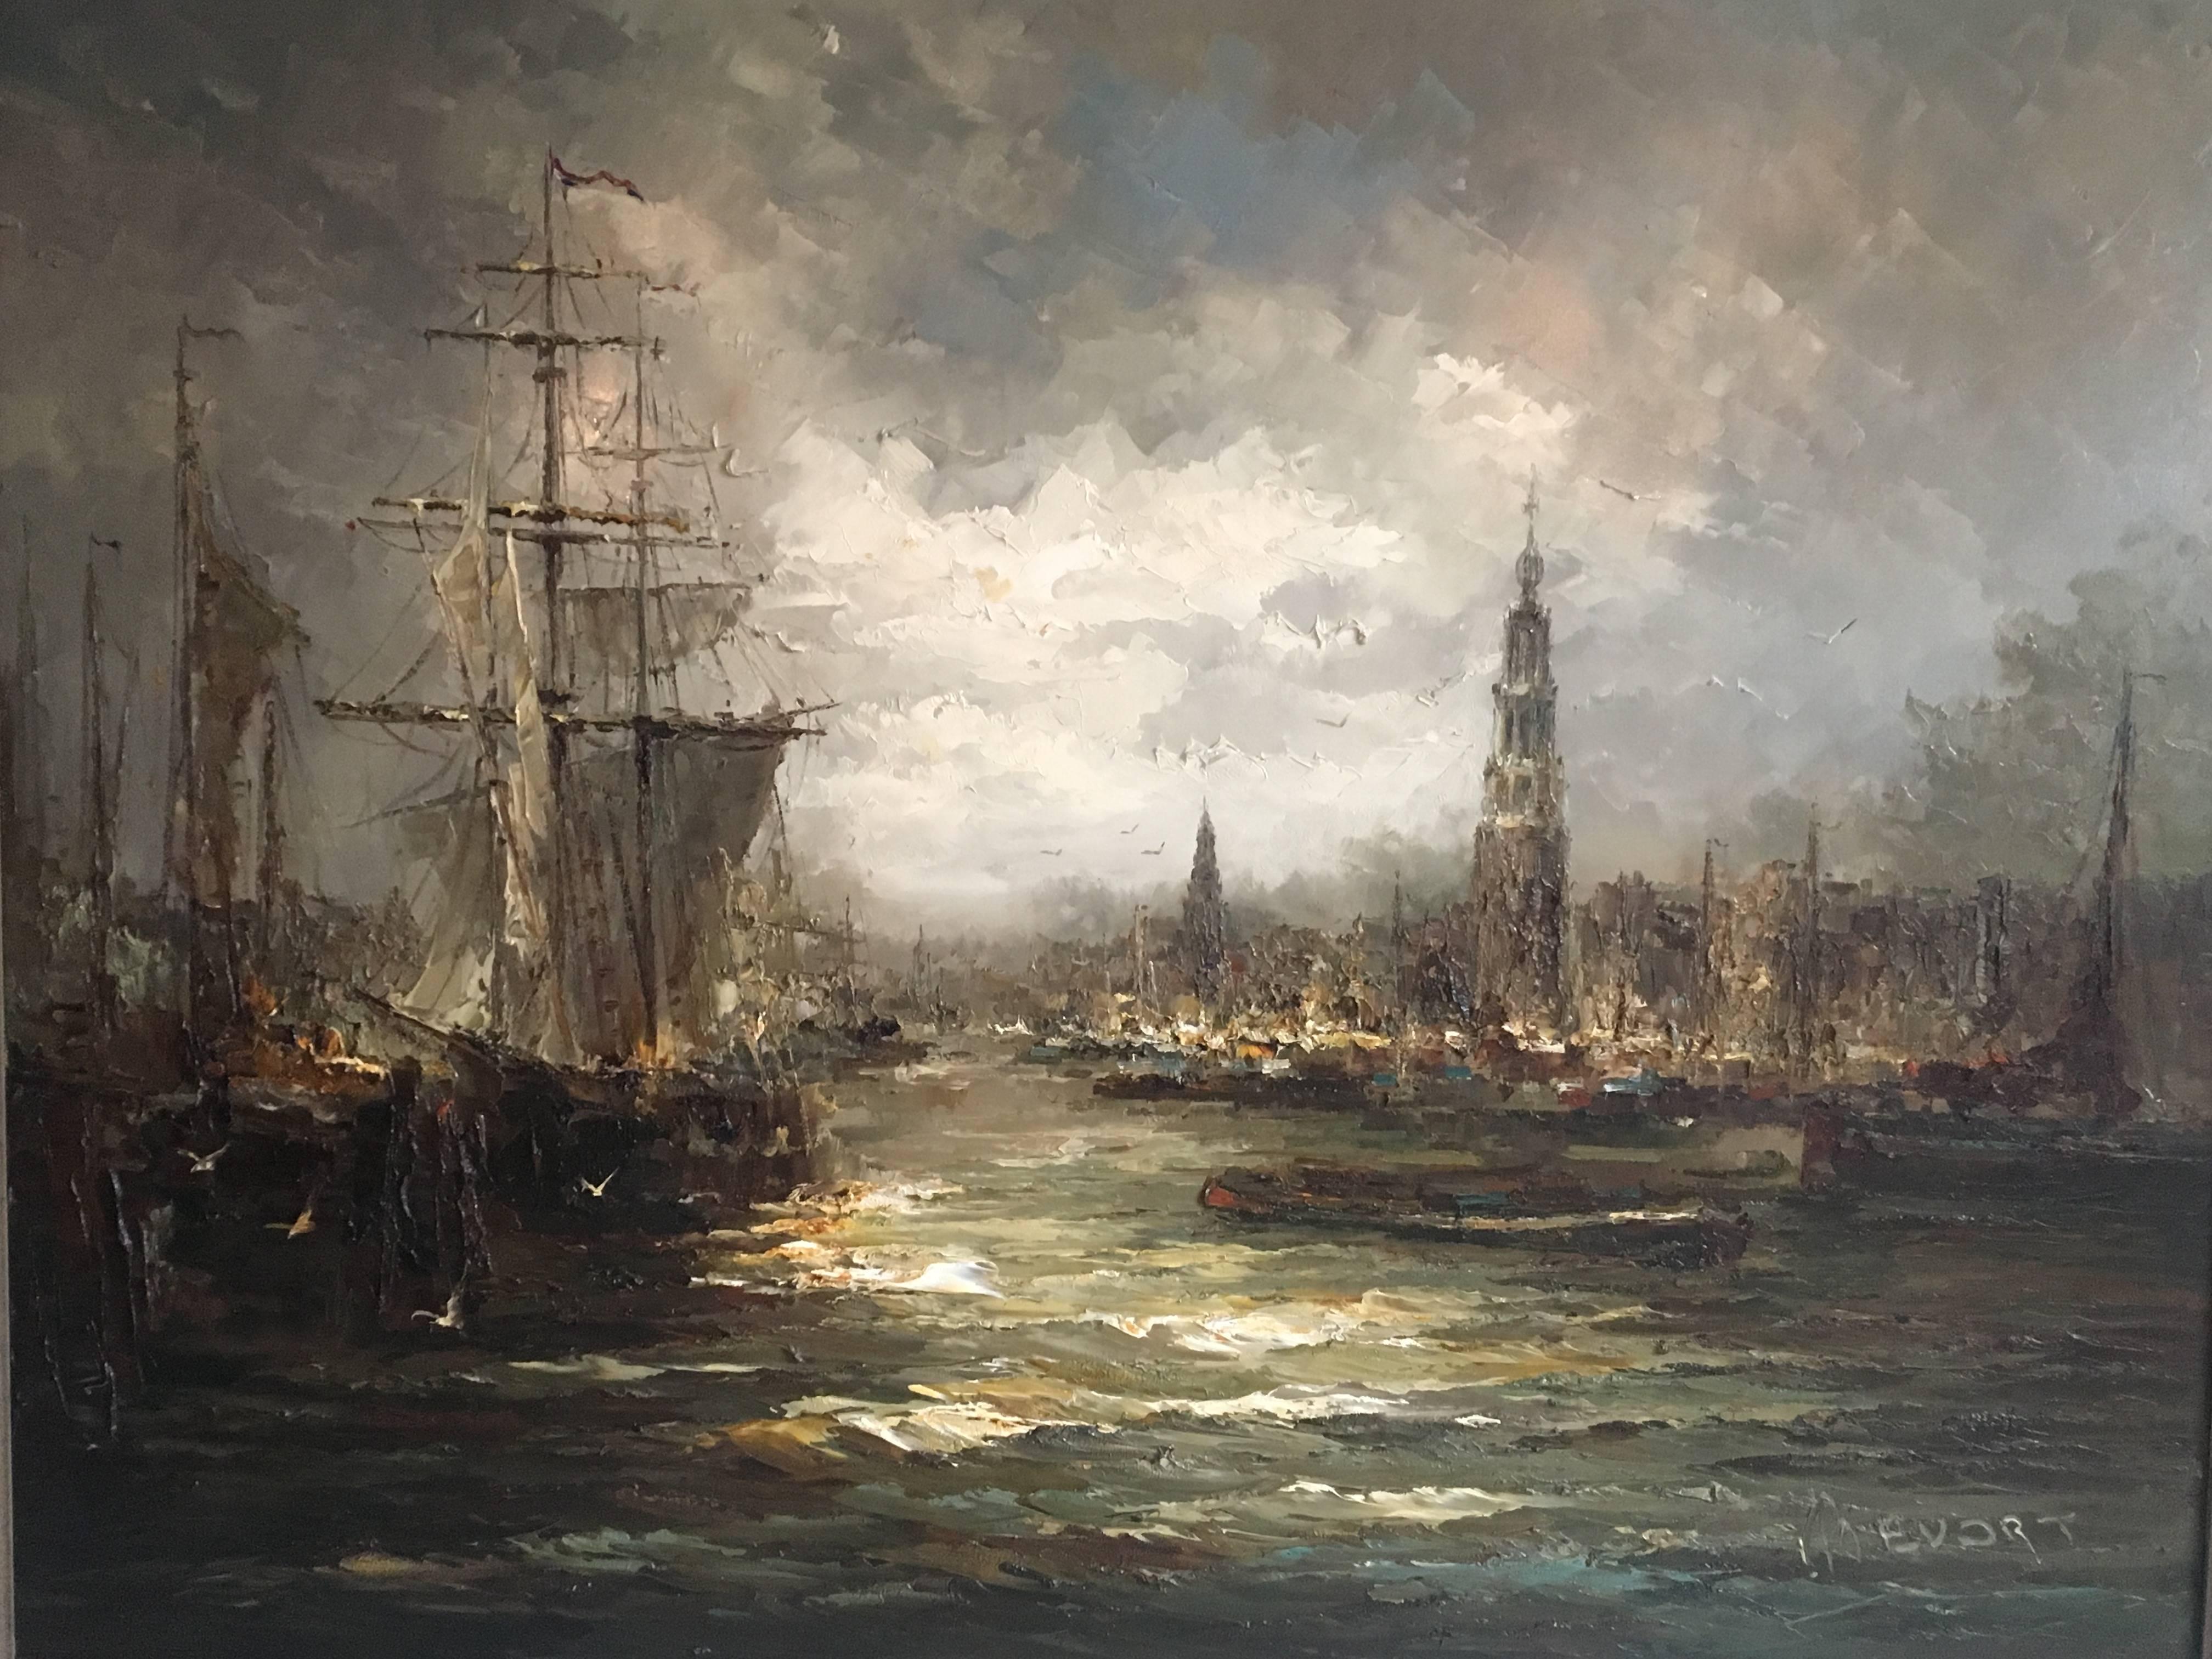 Ce très grand tableau a été créé par John (Johannes, Hubertus) Be'vort, des Pays-Bas. Elle représente une scène maritime ou portuaire et a été peinte avec des couleurs sombres montrant une scène de mauvais temps. Les mouettes le complètent, ainsi